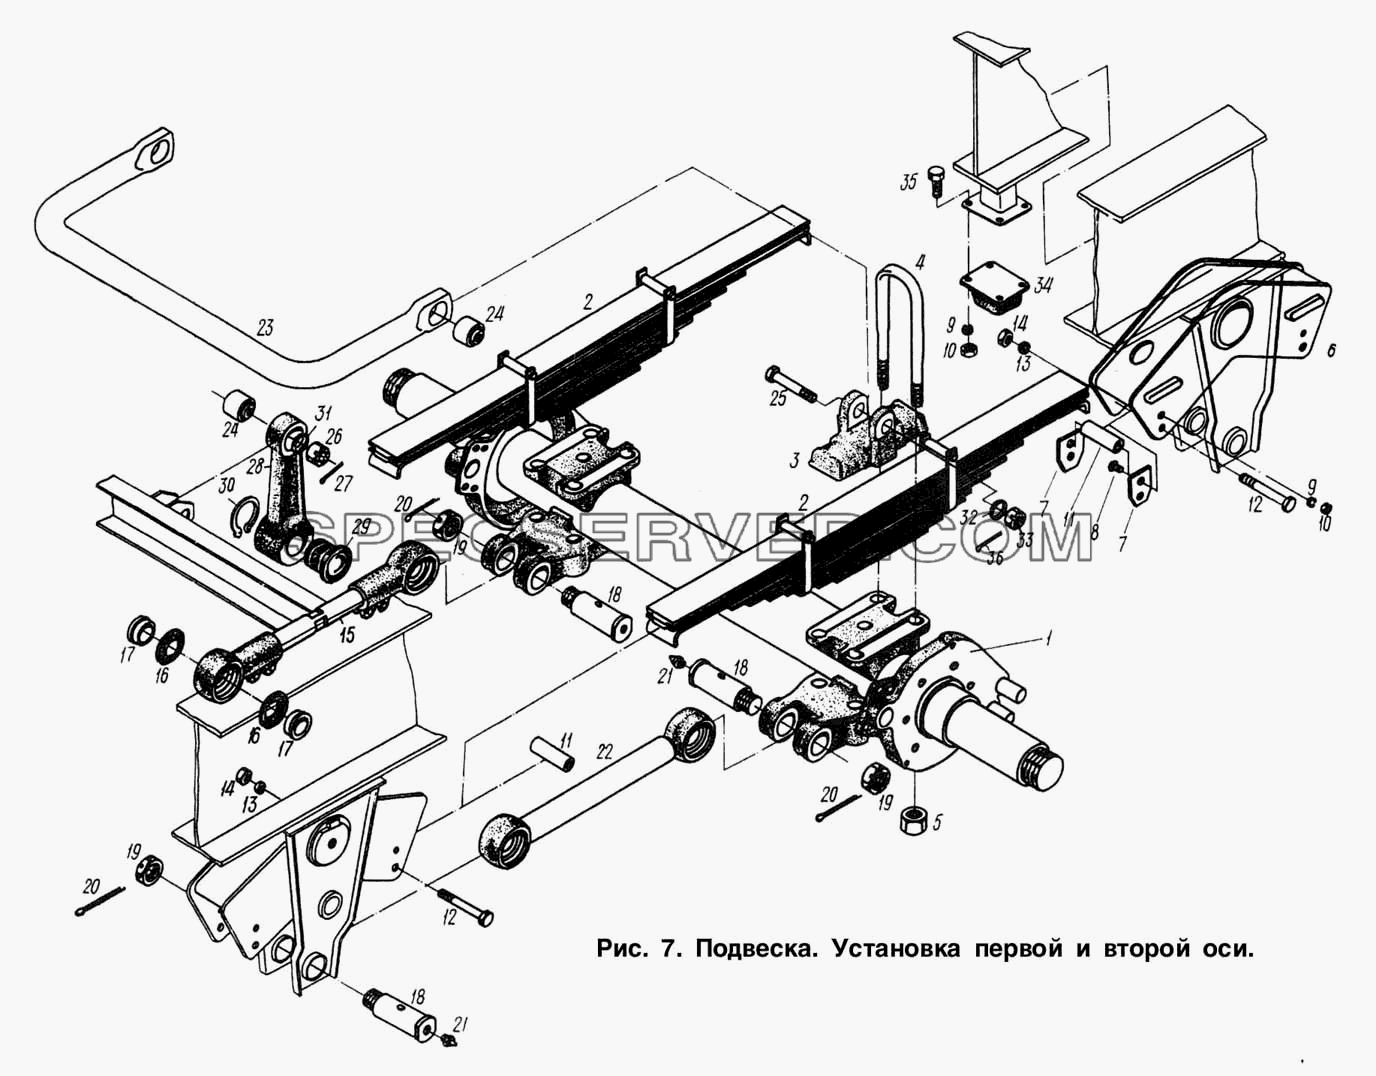 Подвеска. Установка первой и второй оси для МАЗ-93892 (список запасных частей)